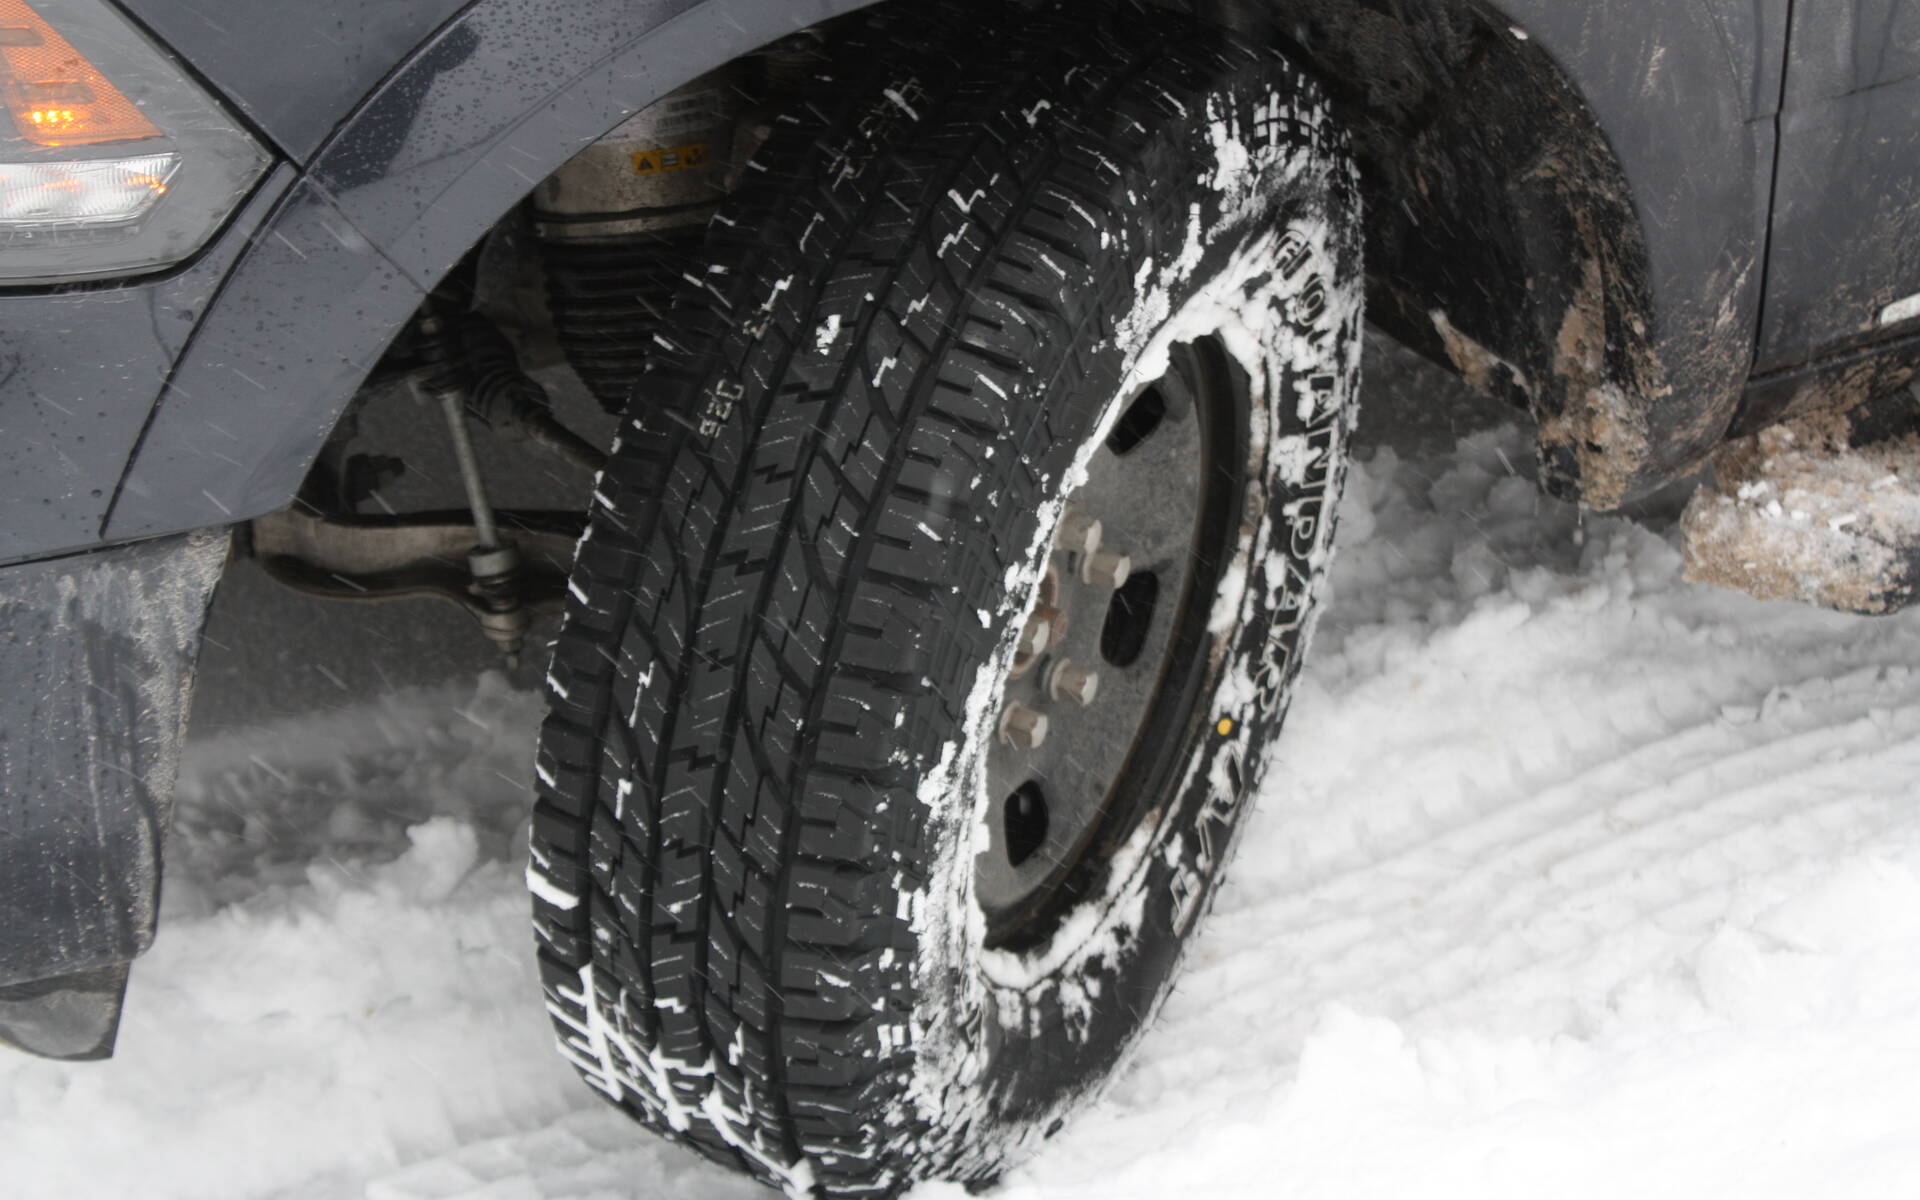 Conduite sur la neige : pourquoi ma voiture ne peut chausser de